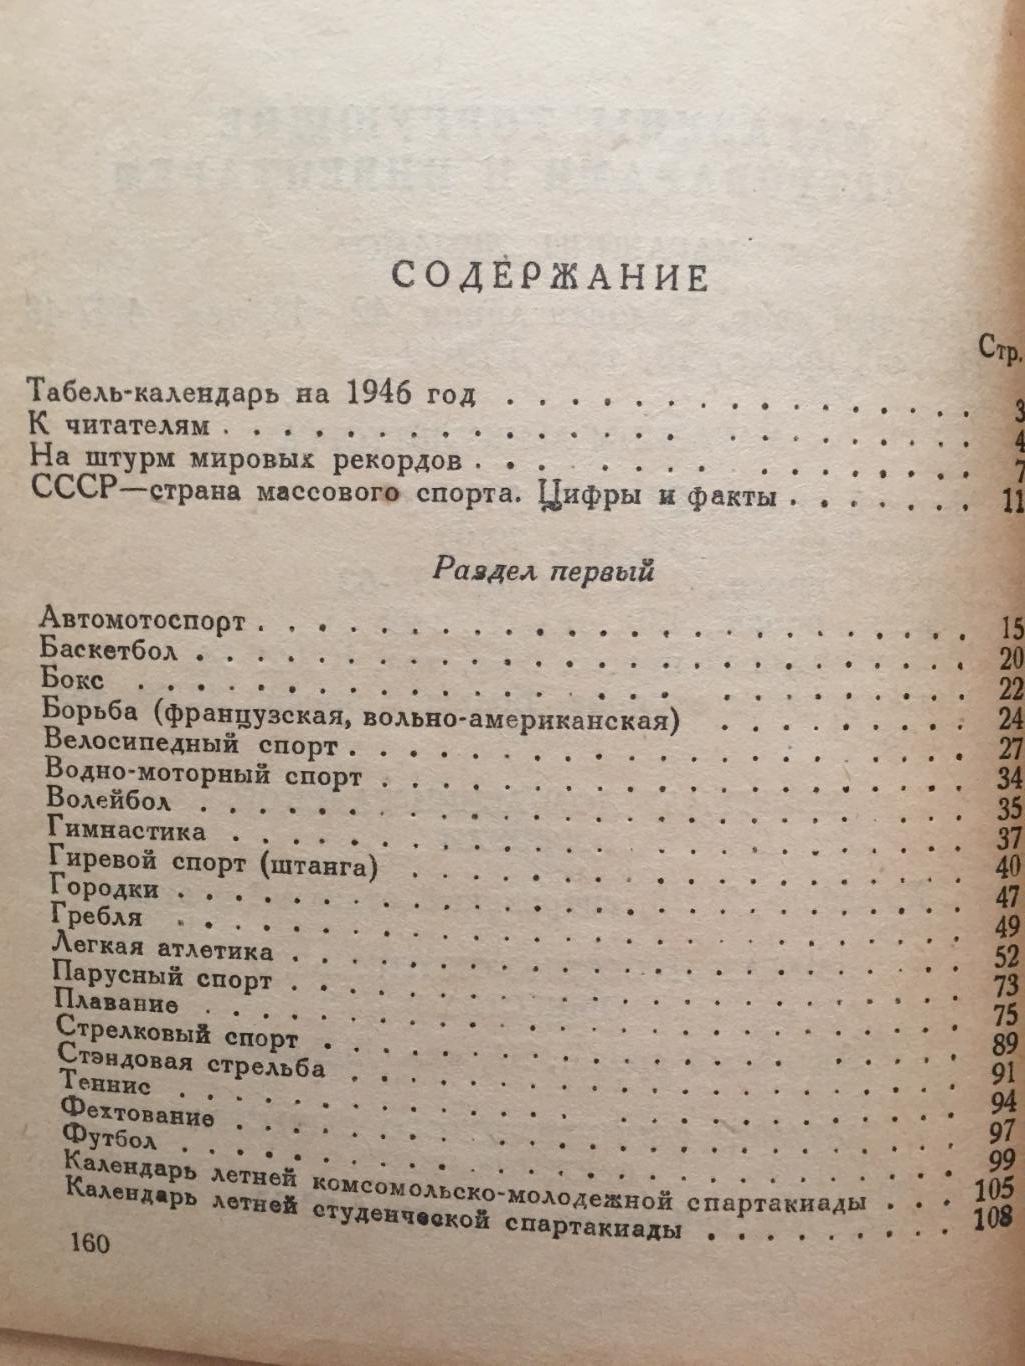 Пендер-Бугровский Спортивный справочник 1946 5